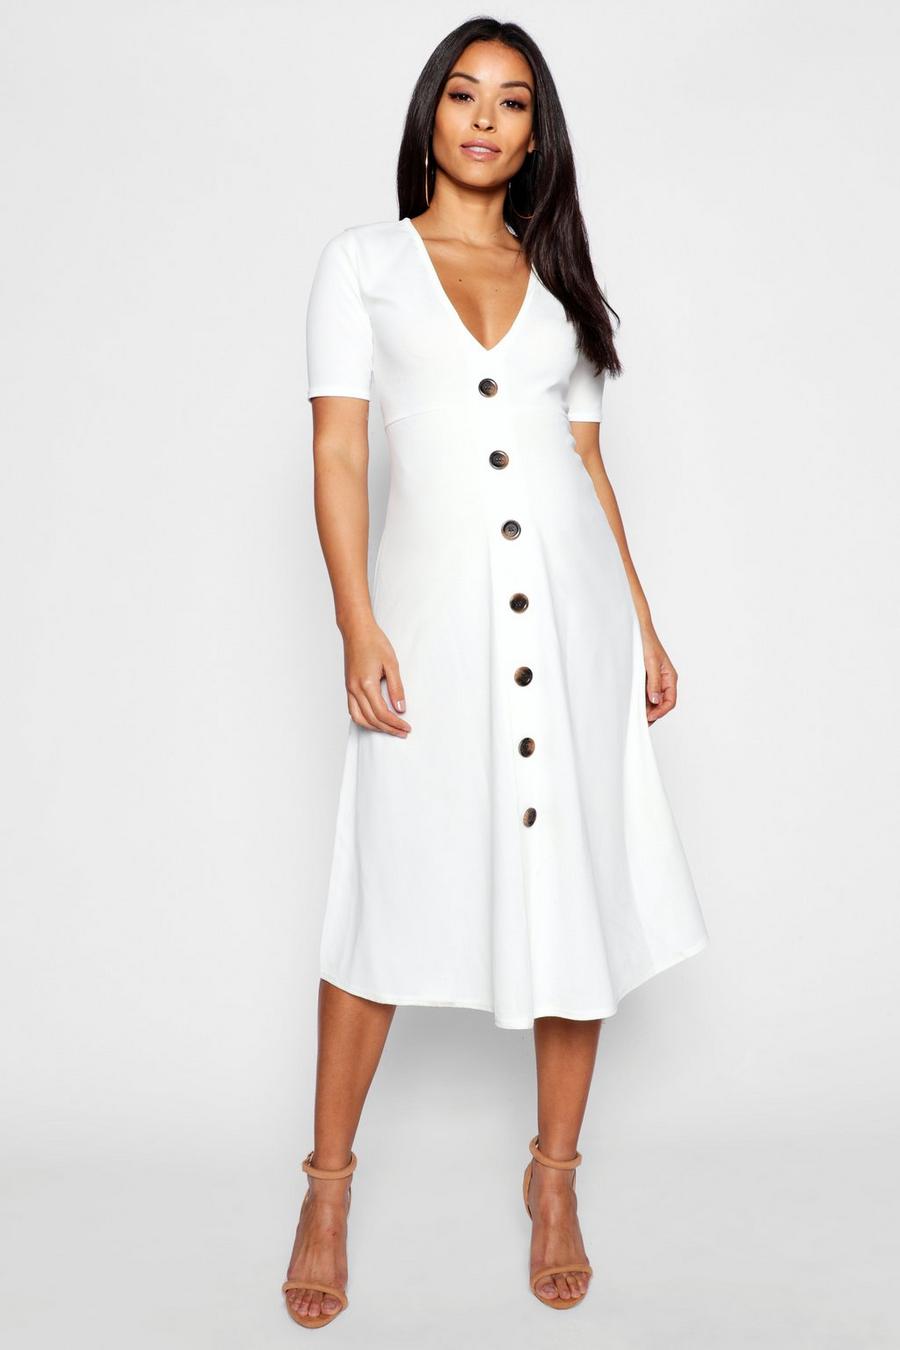 שנהב white שמלת מידי בגזרת A עם כפתורים בגדי היריון